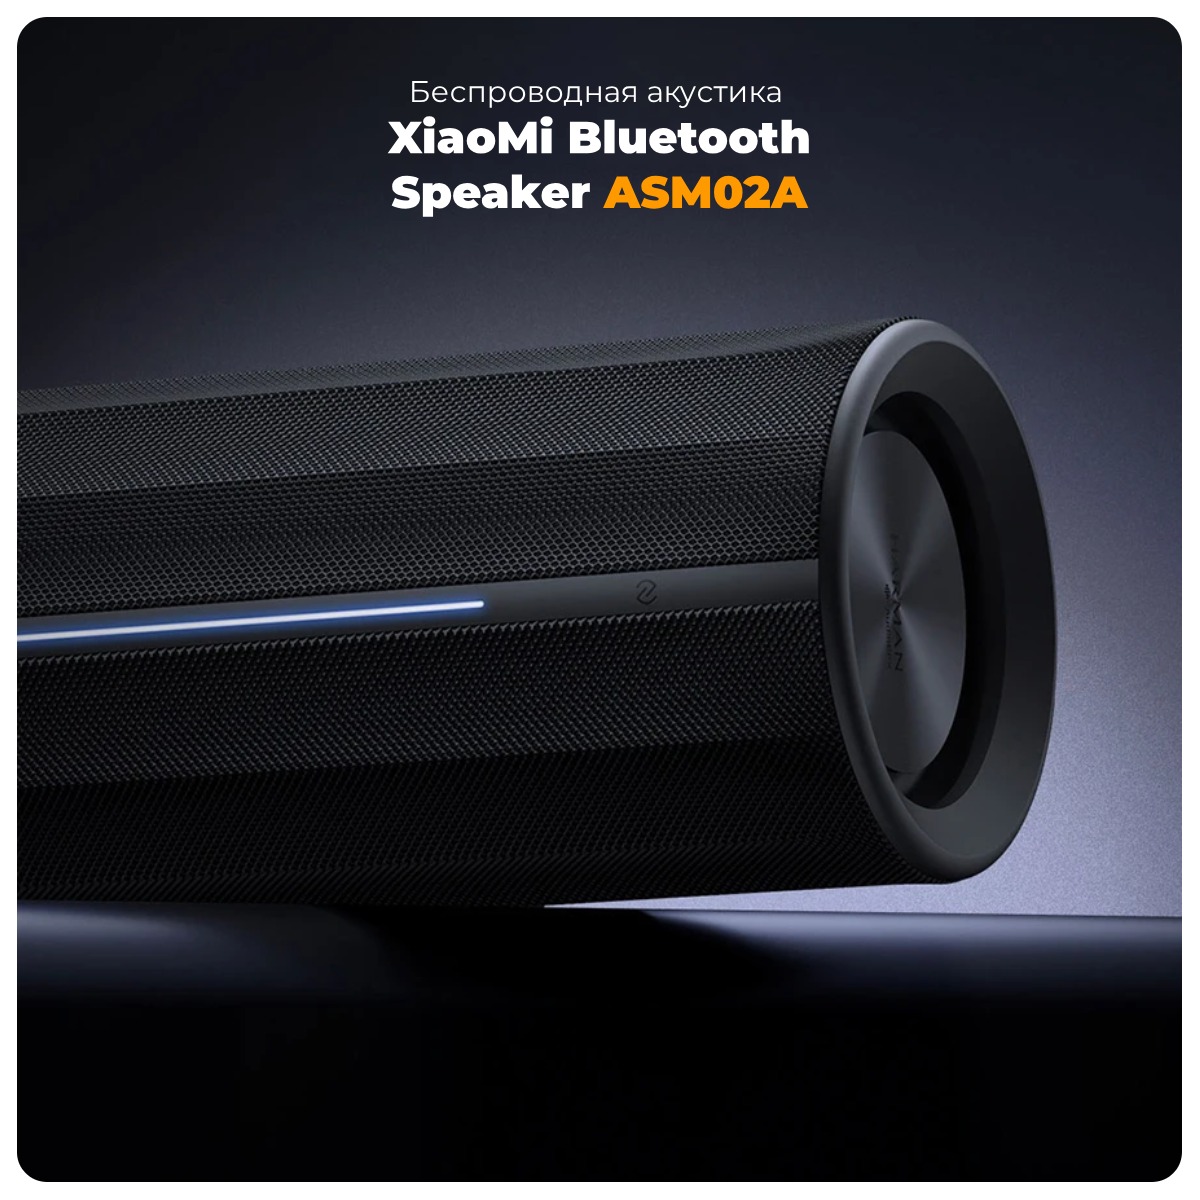 XiaoMi-Bluetooth-Speaker-ASM02A-01